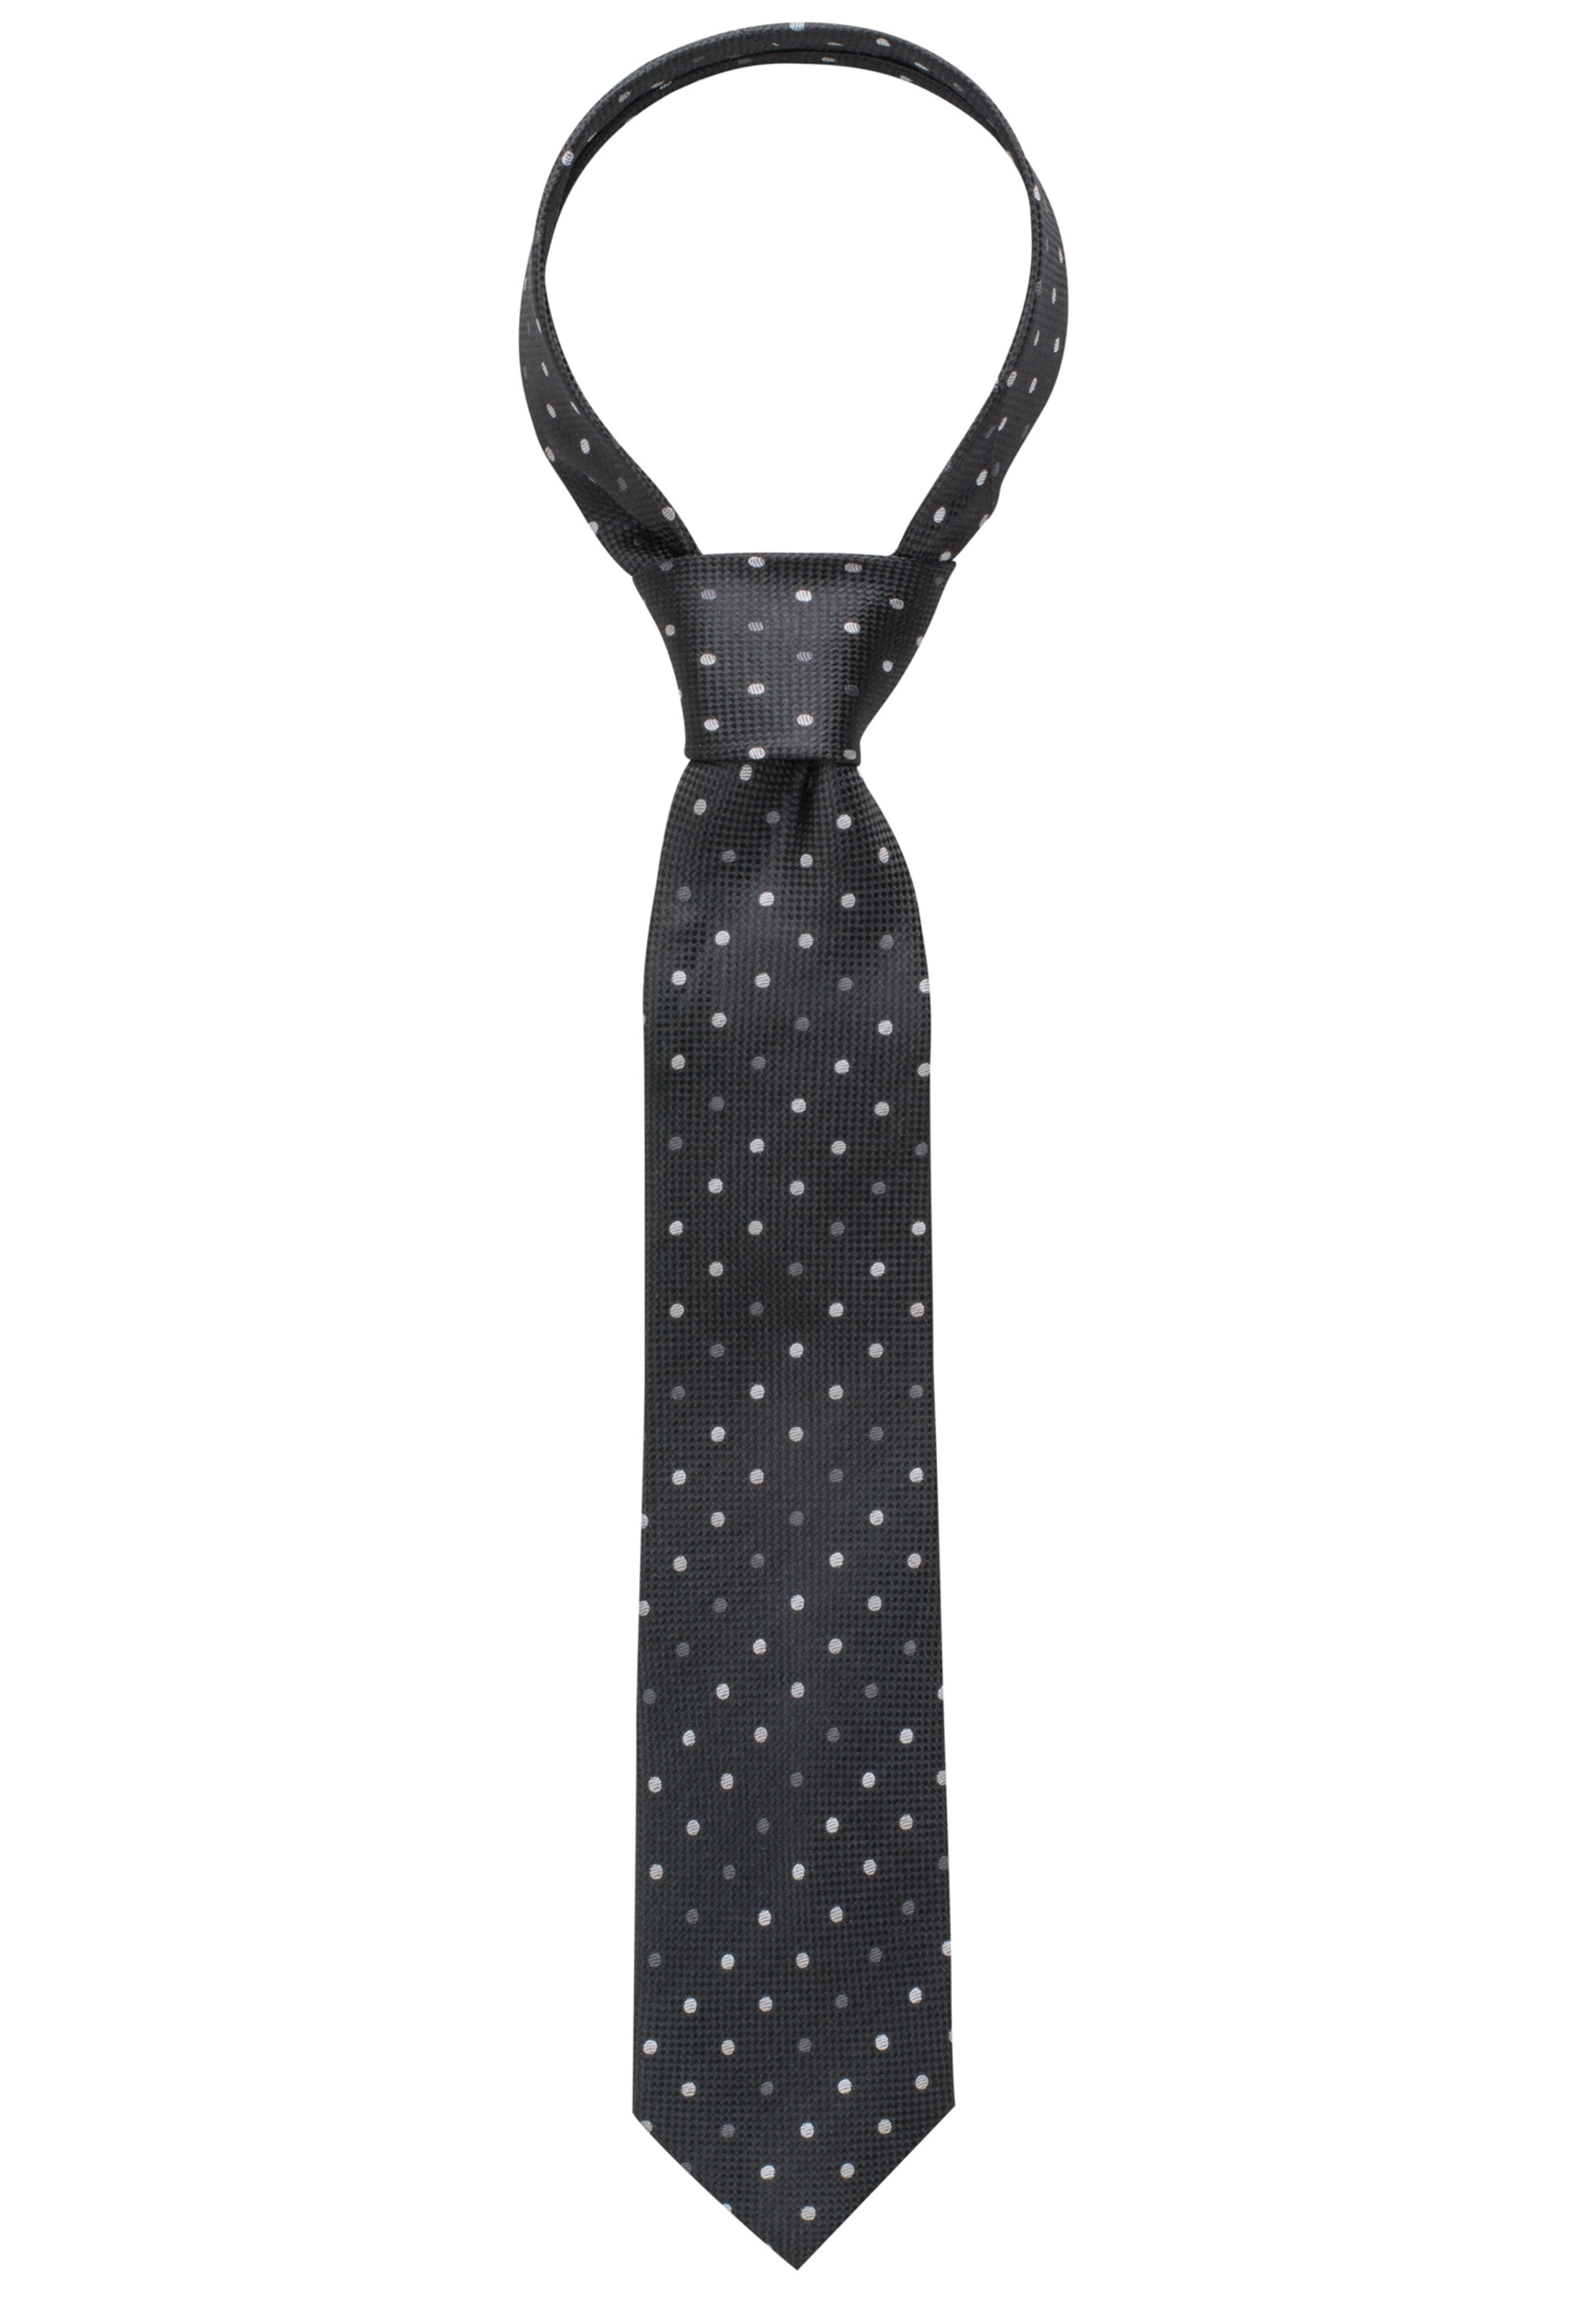 Männer Anzug - Accessoires ETERNA Krawatte in Dunkelgrau, Schwarz - RK44485